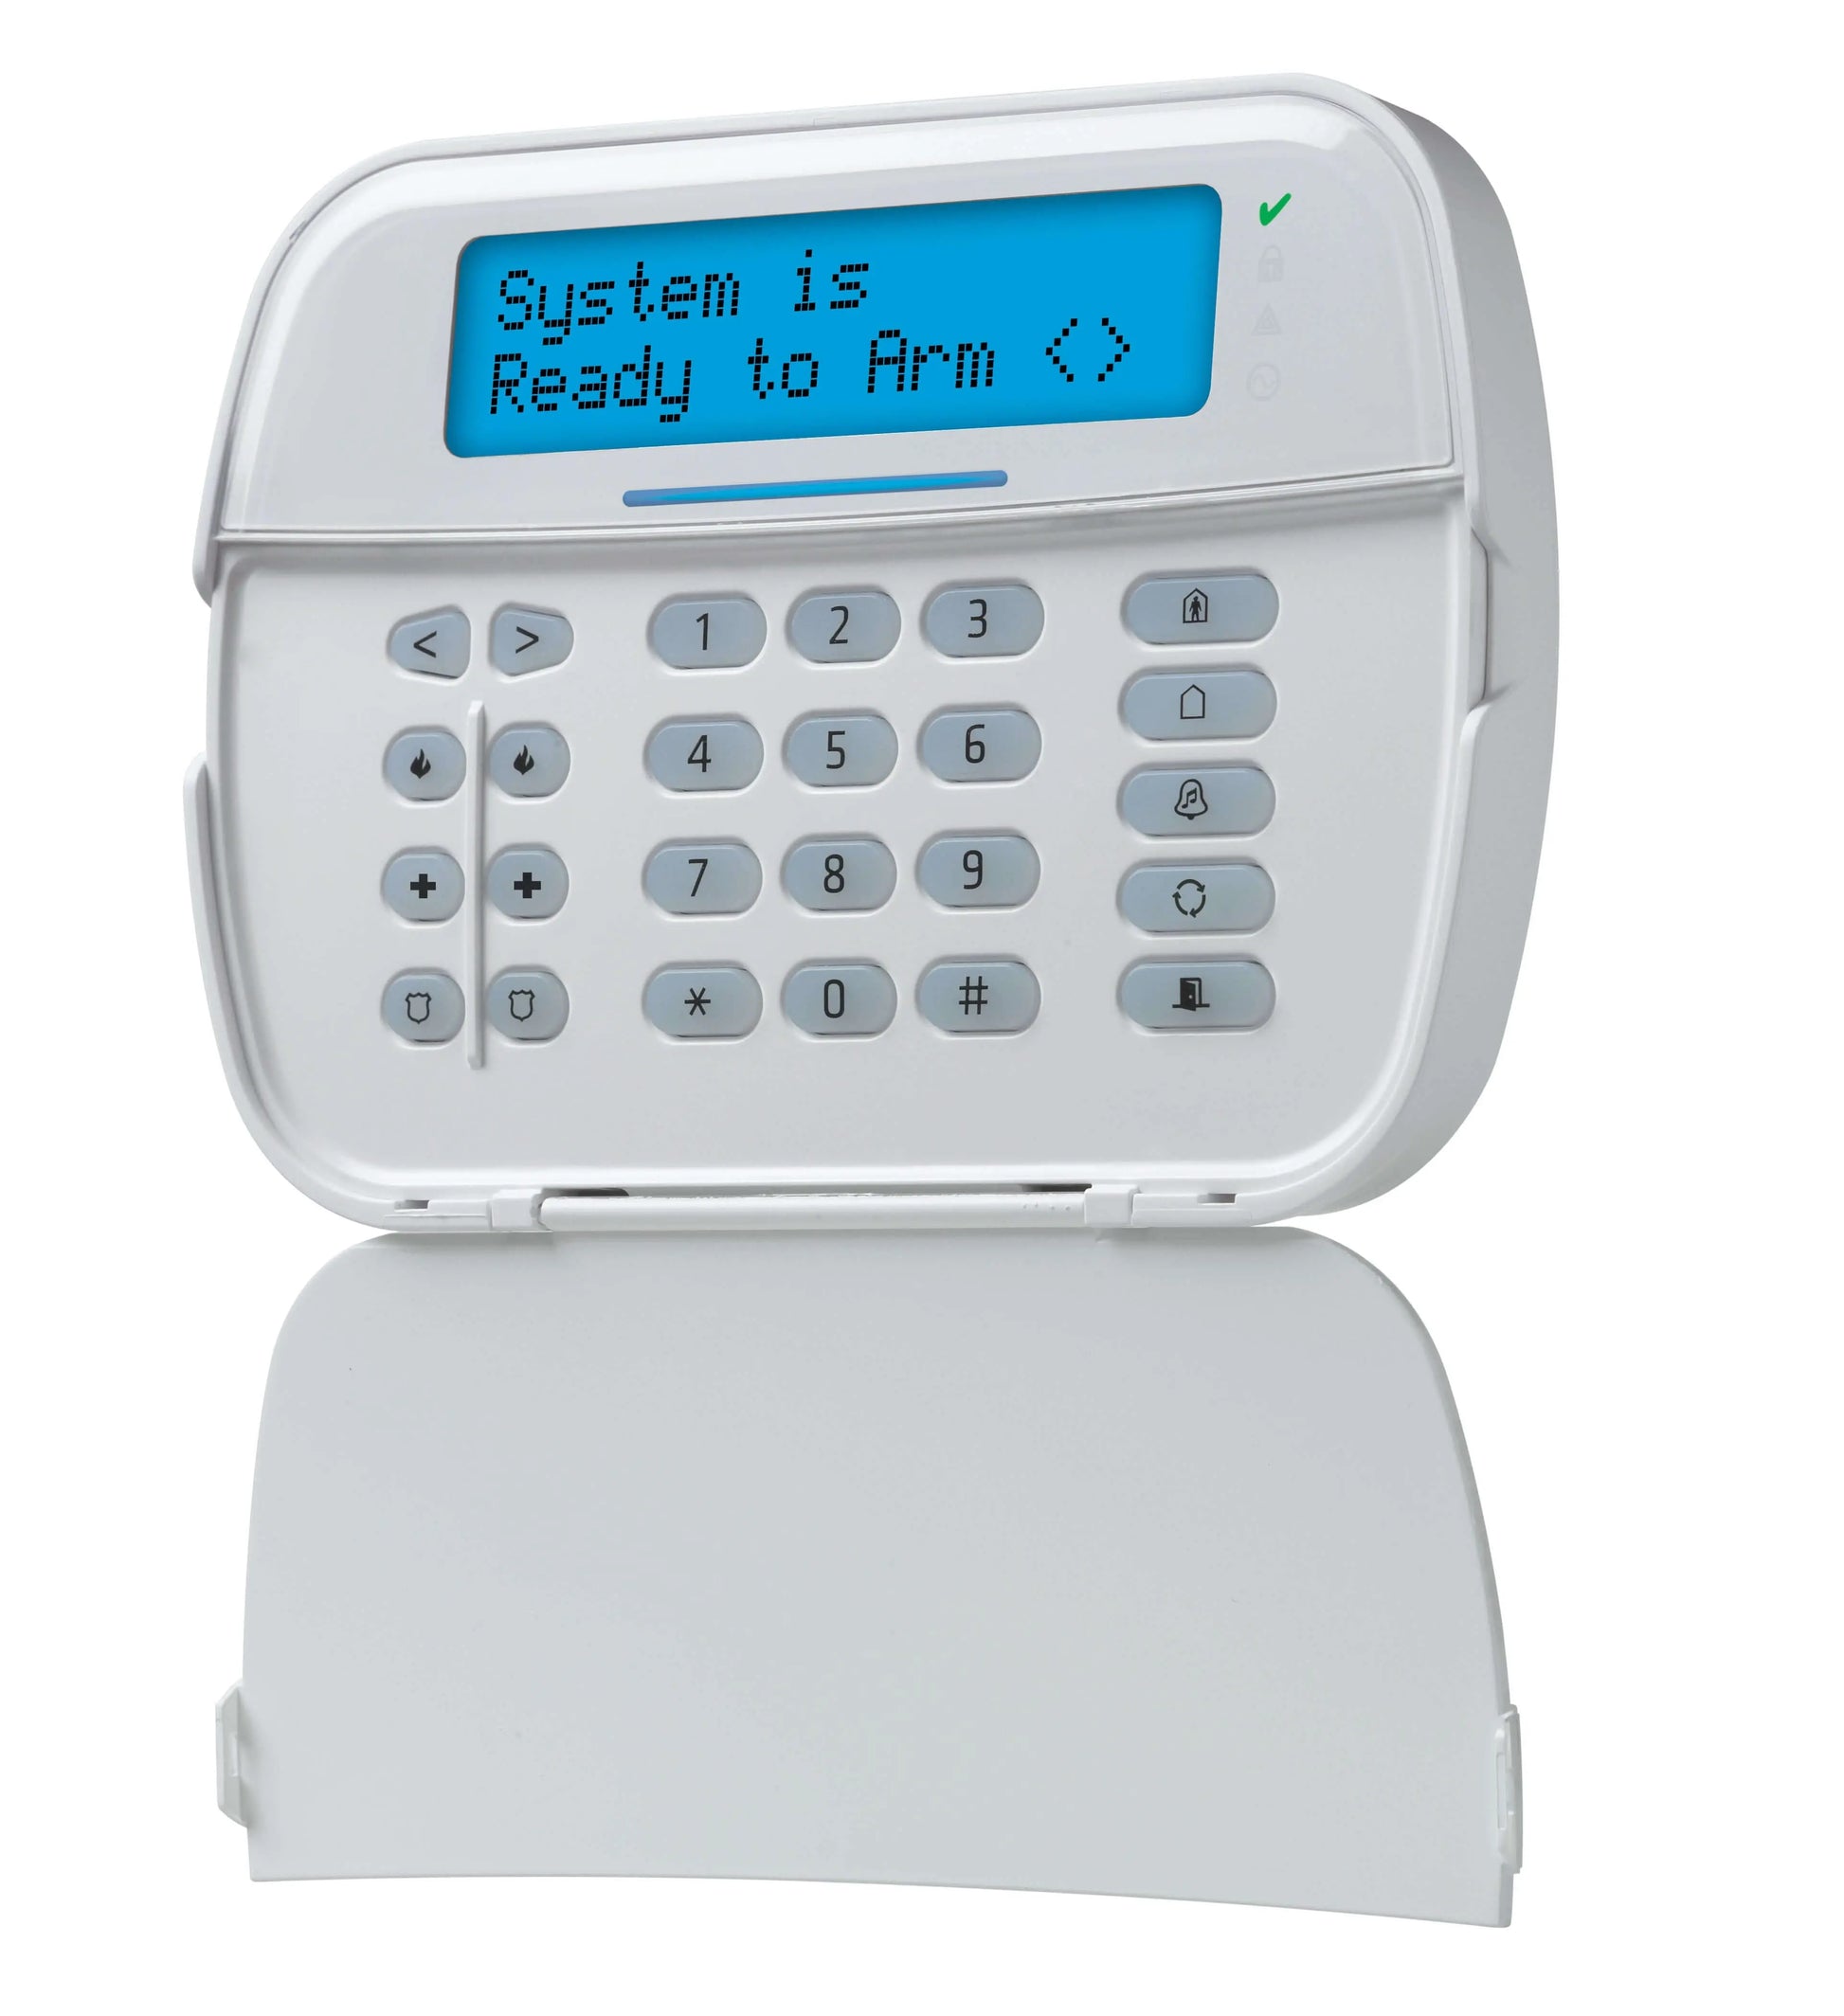 alarm system full message keypad